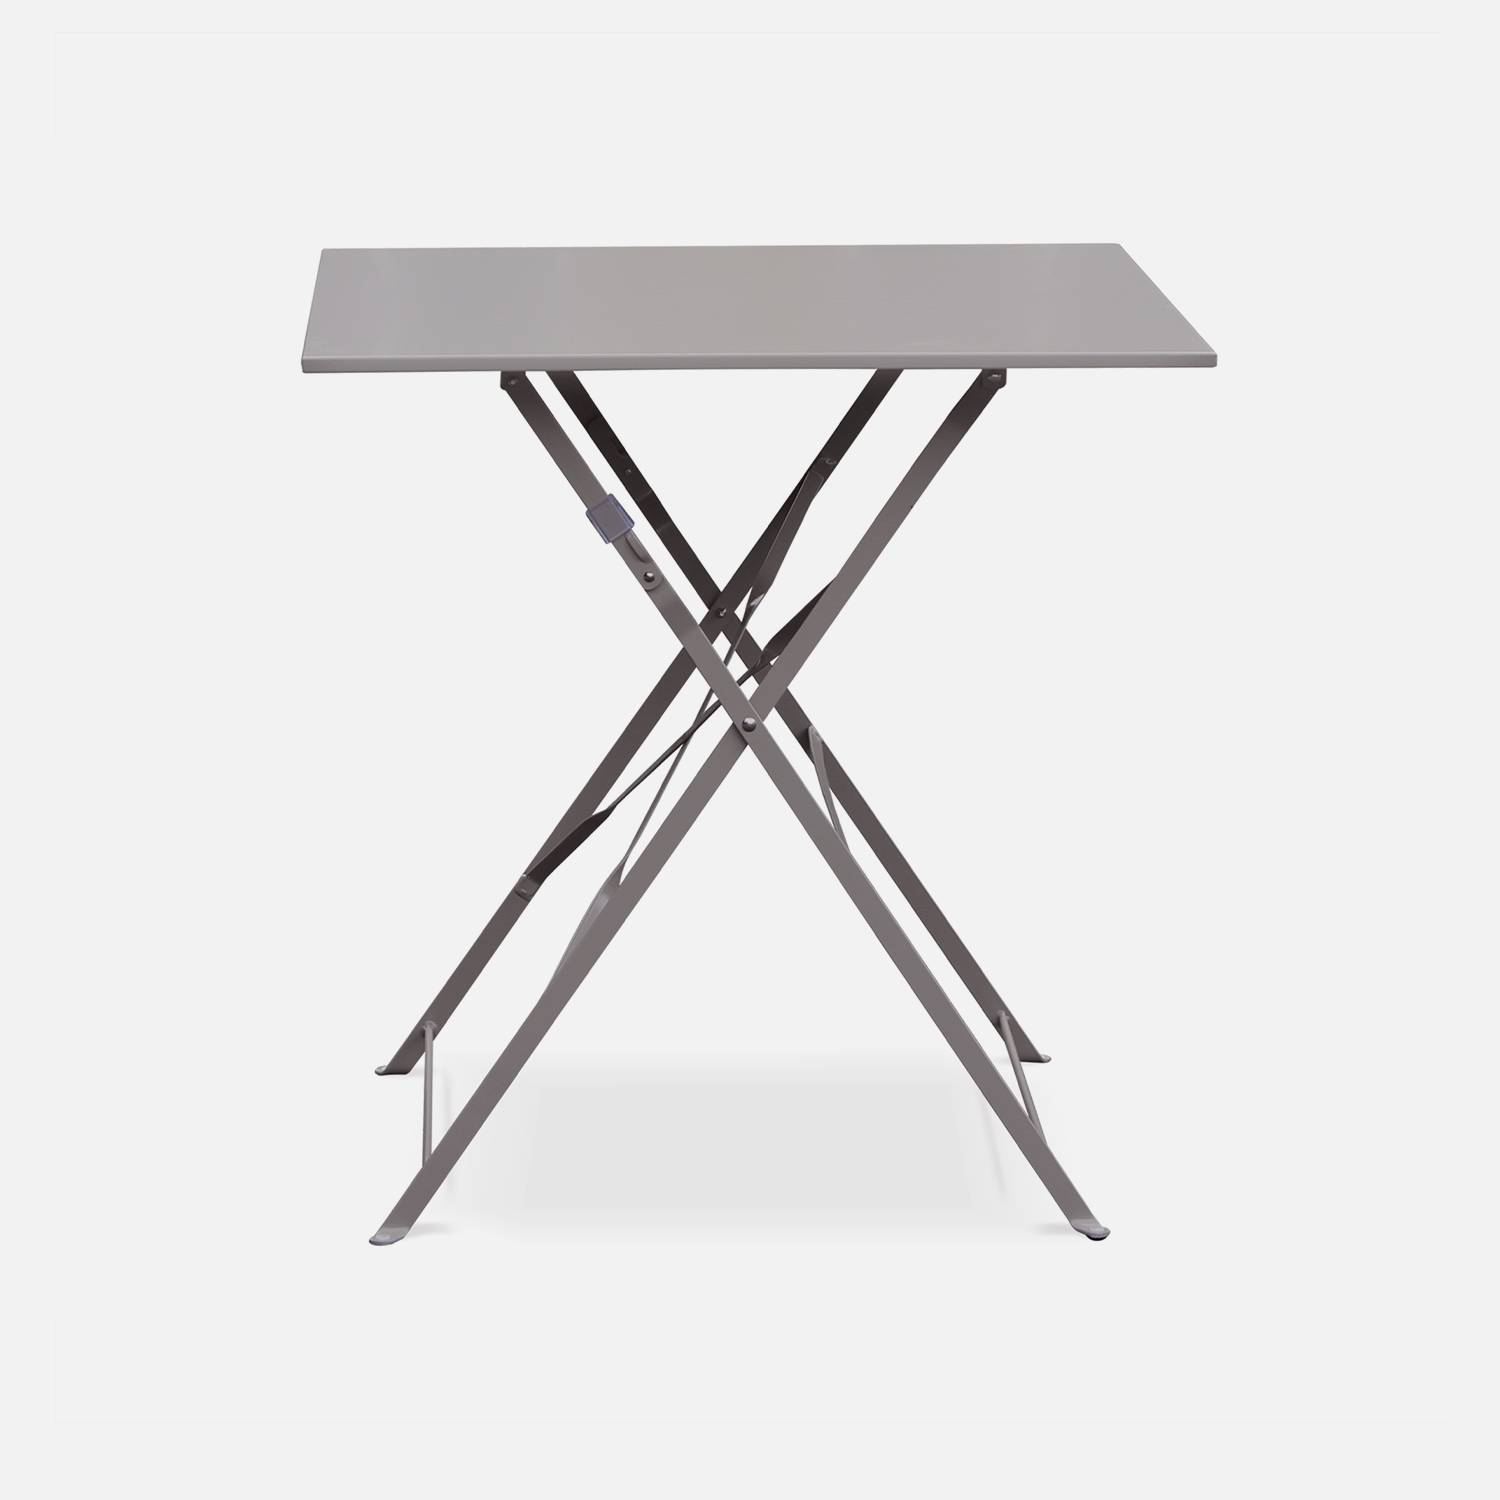 Klappbare Bistro-Gartenmöbel - Emilia taupe grau - Quadratischer Tisch 70x70cm mit zwei Klappstühlen aus pulverbeschichtetem Stahl Photo3